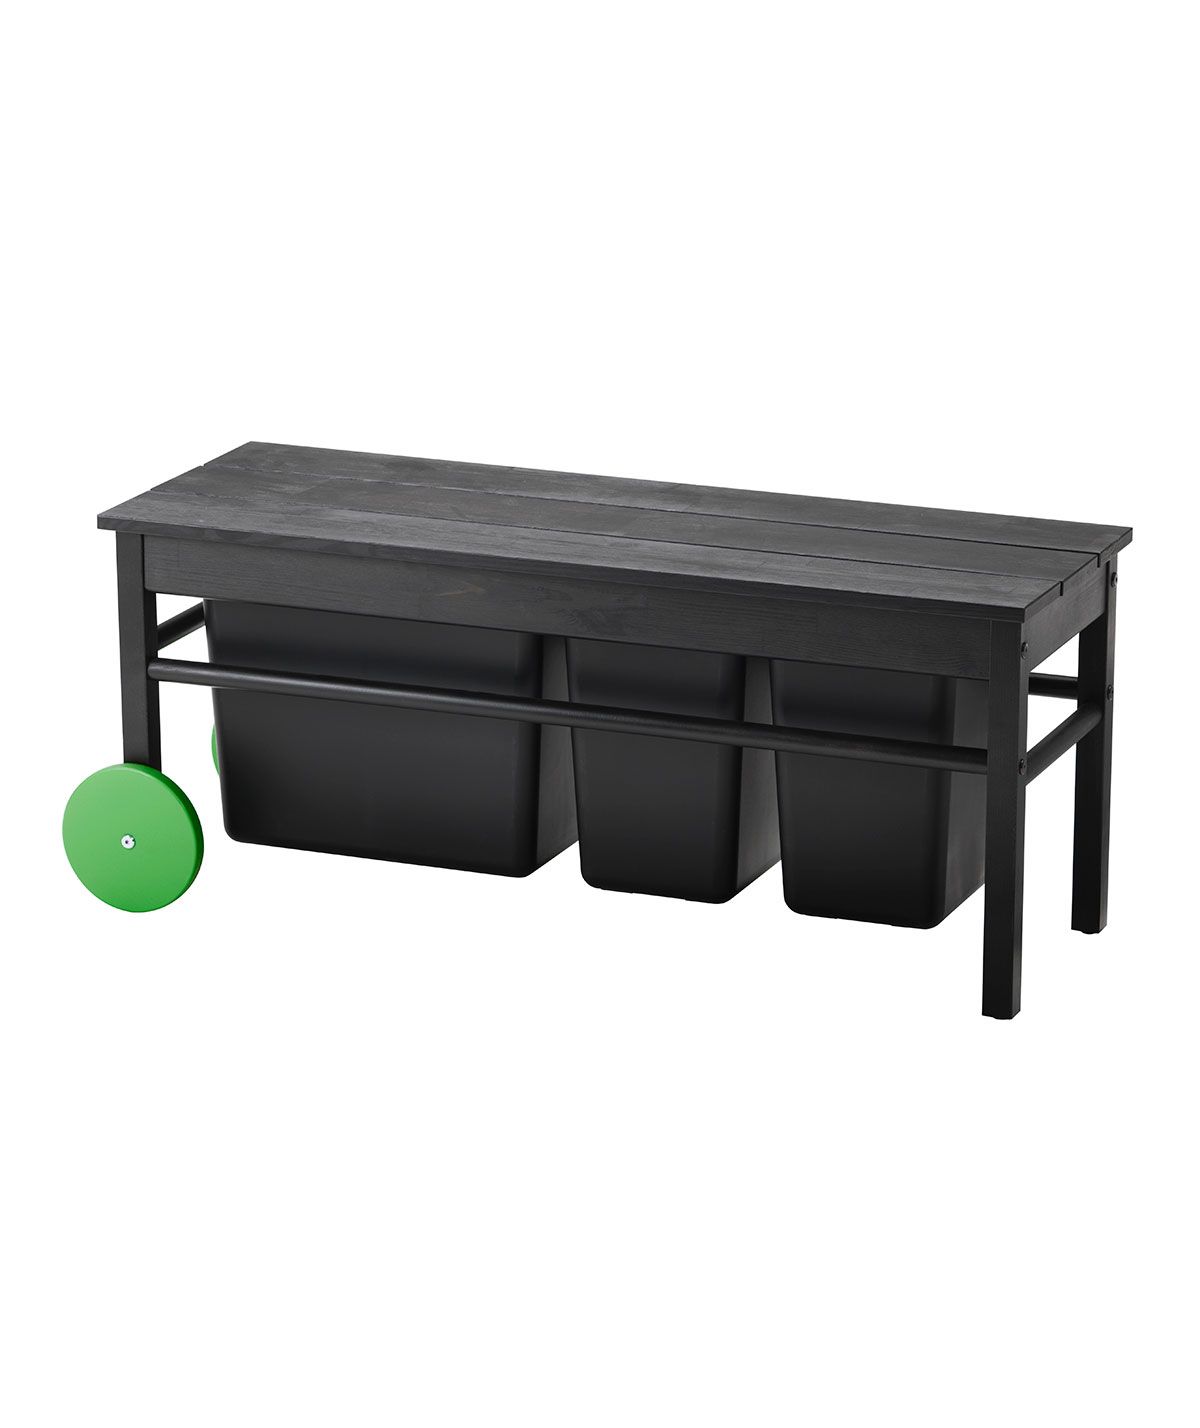 به جدیدترین مجموعه Ikea’s (سازگار با محیط زیست!) نگاهی بیندازید